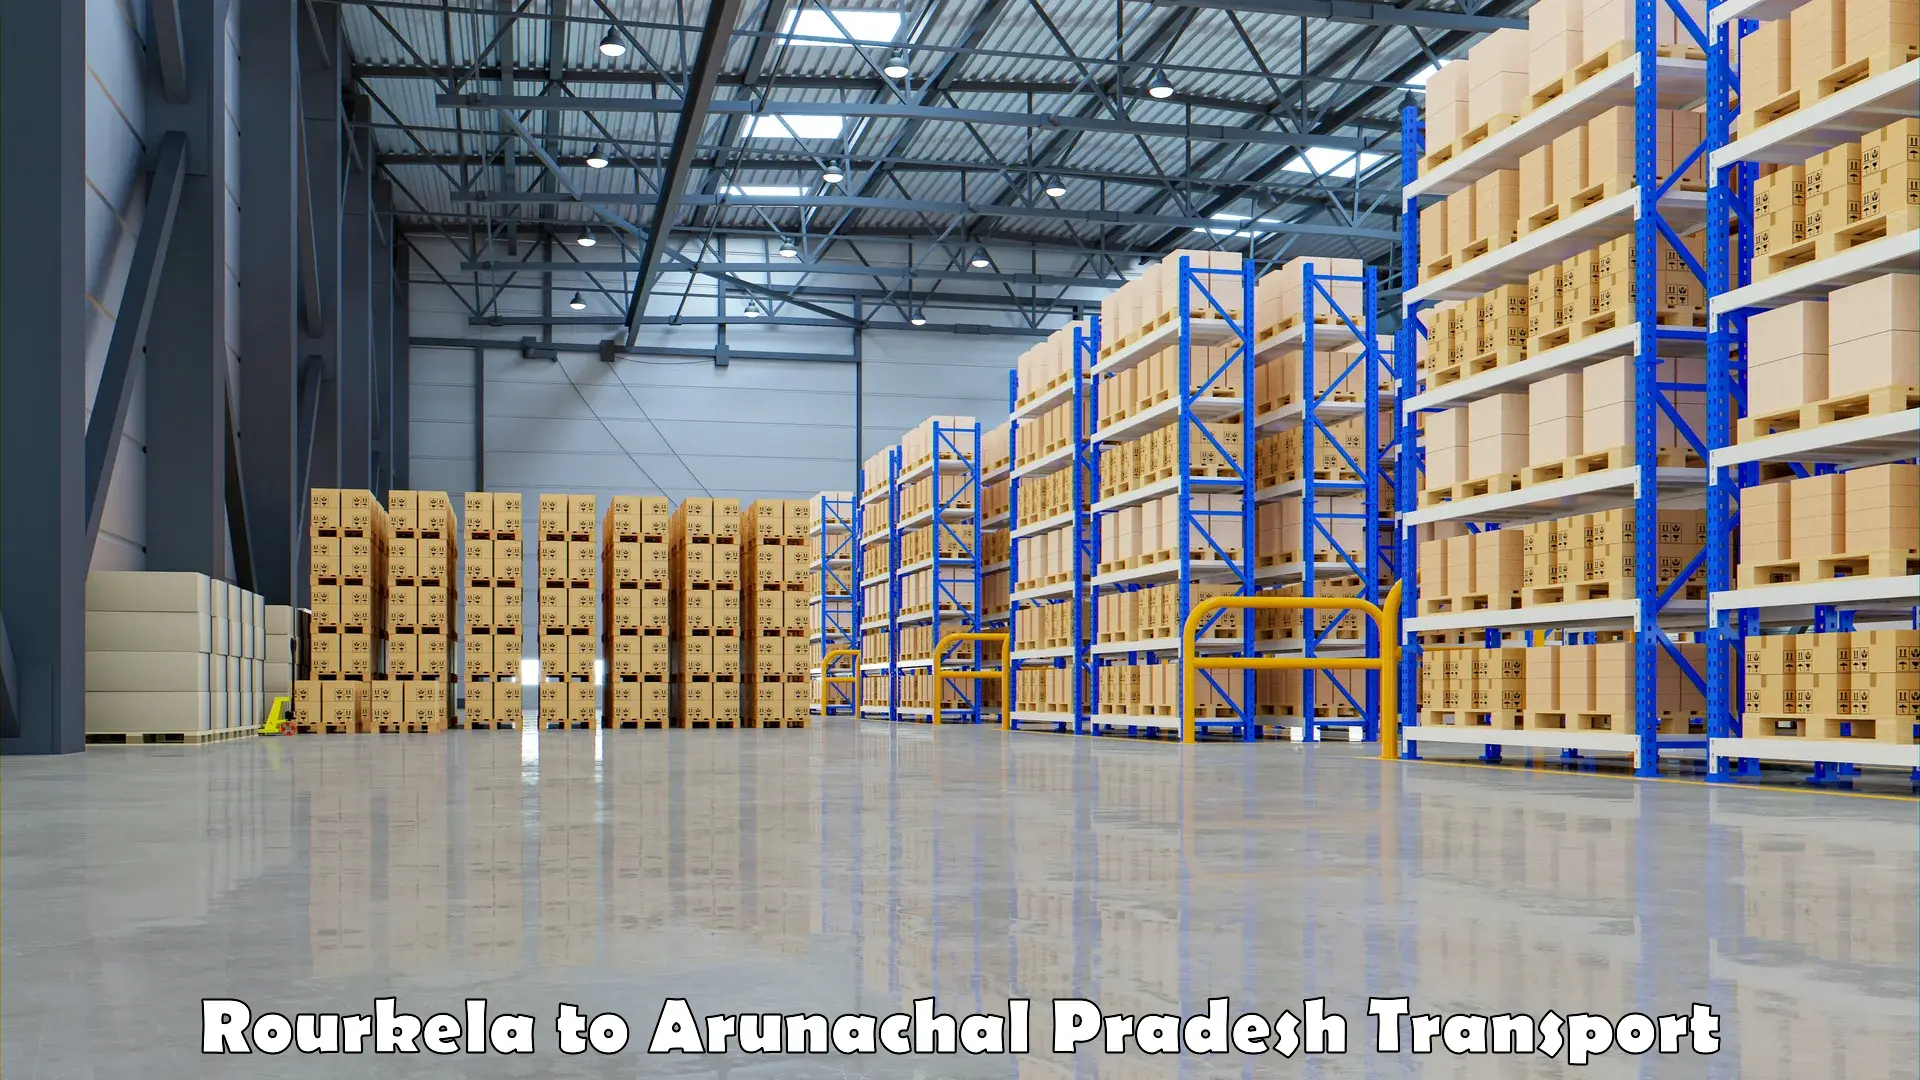 Commercial transport service Rourkela to Arunachal Pradesh